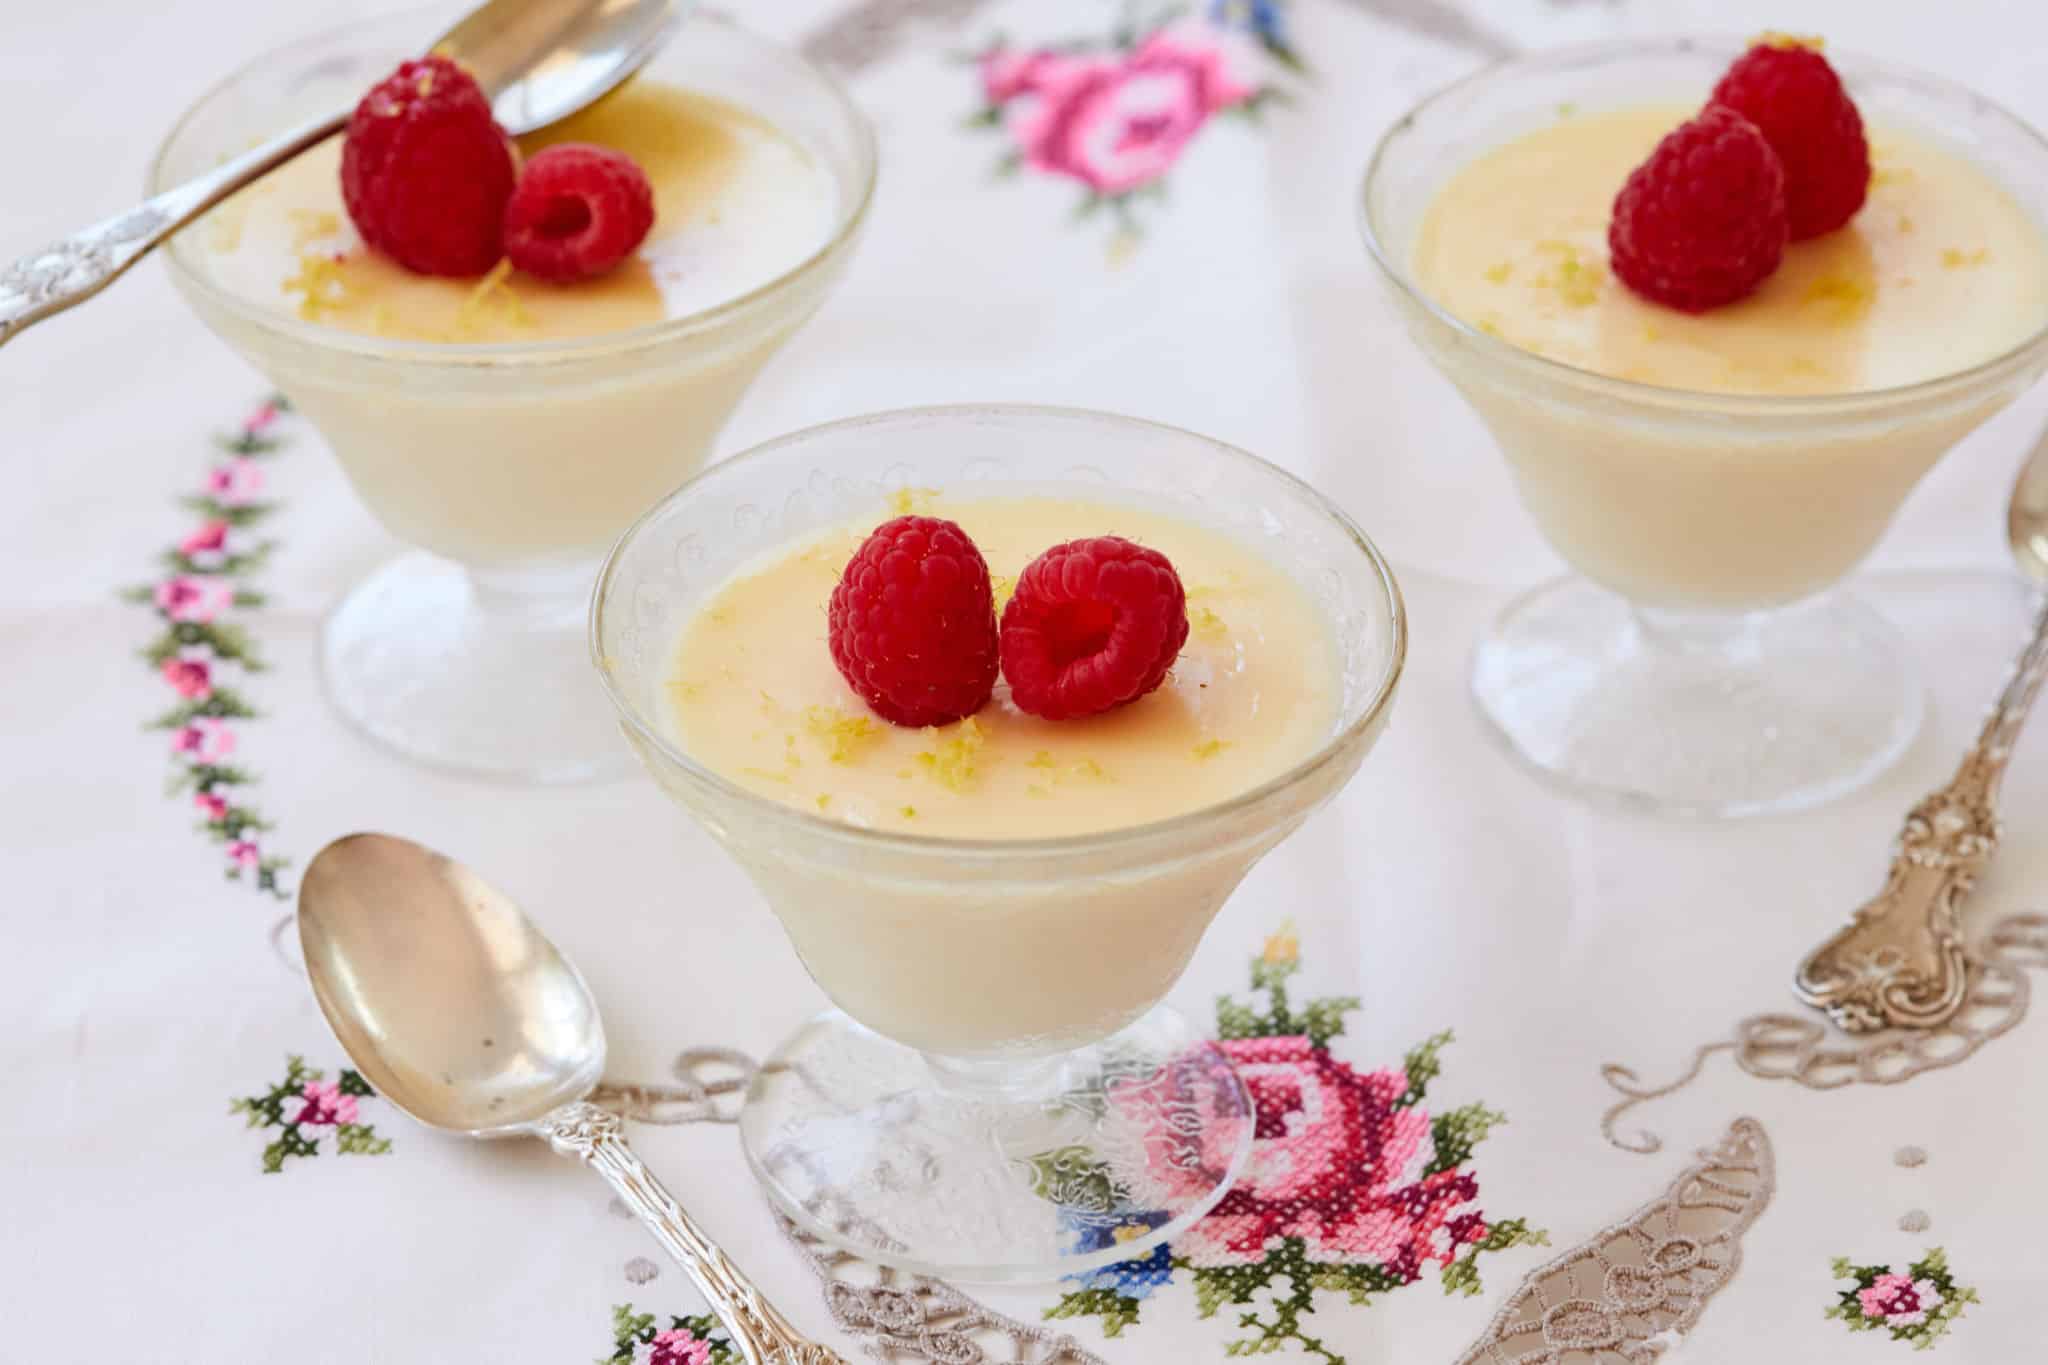 Lemon Posset in elegant dishes topped with raspberries